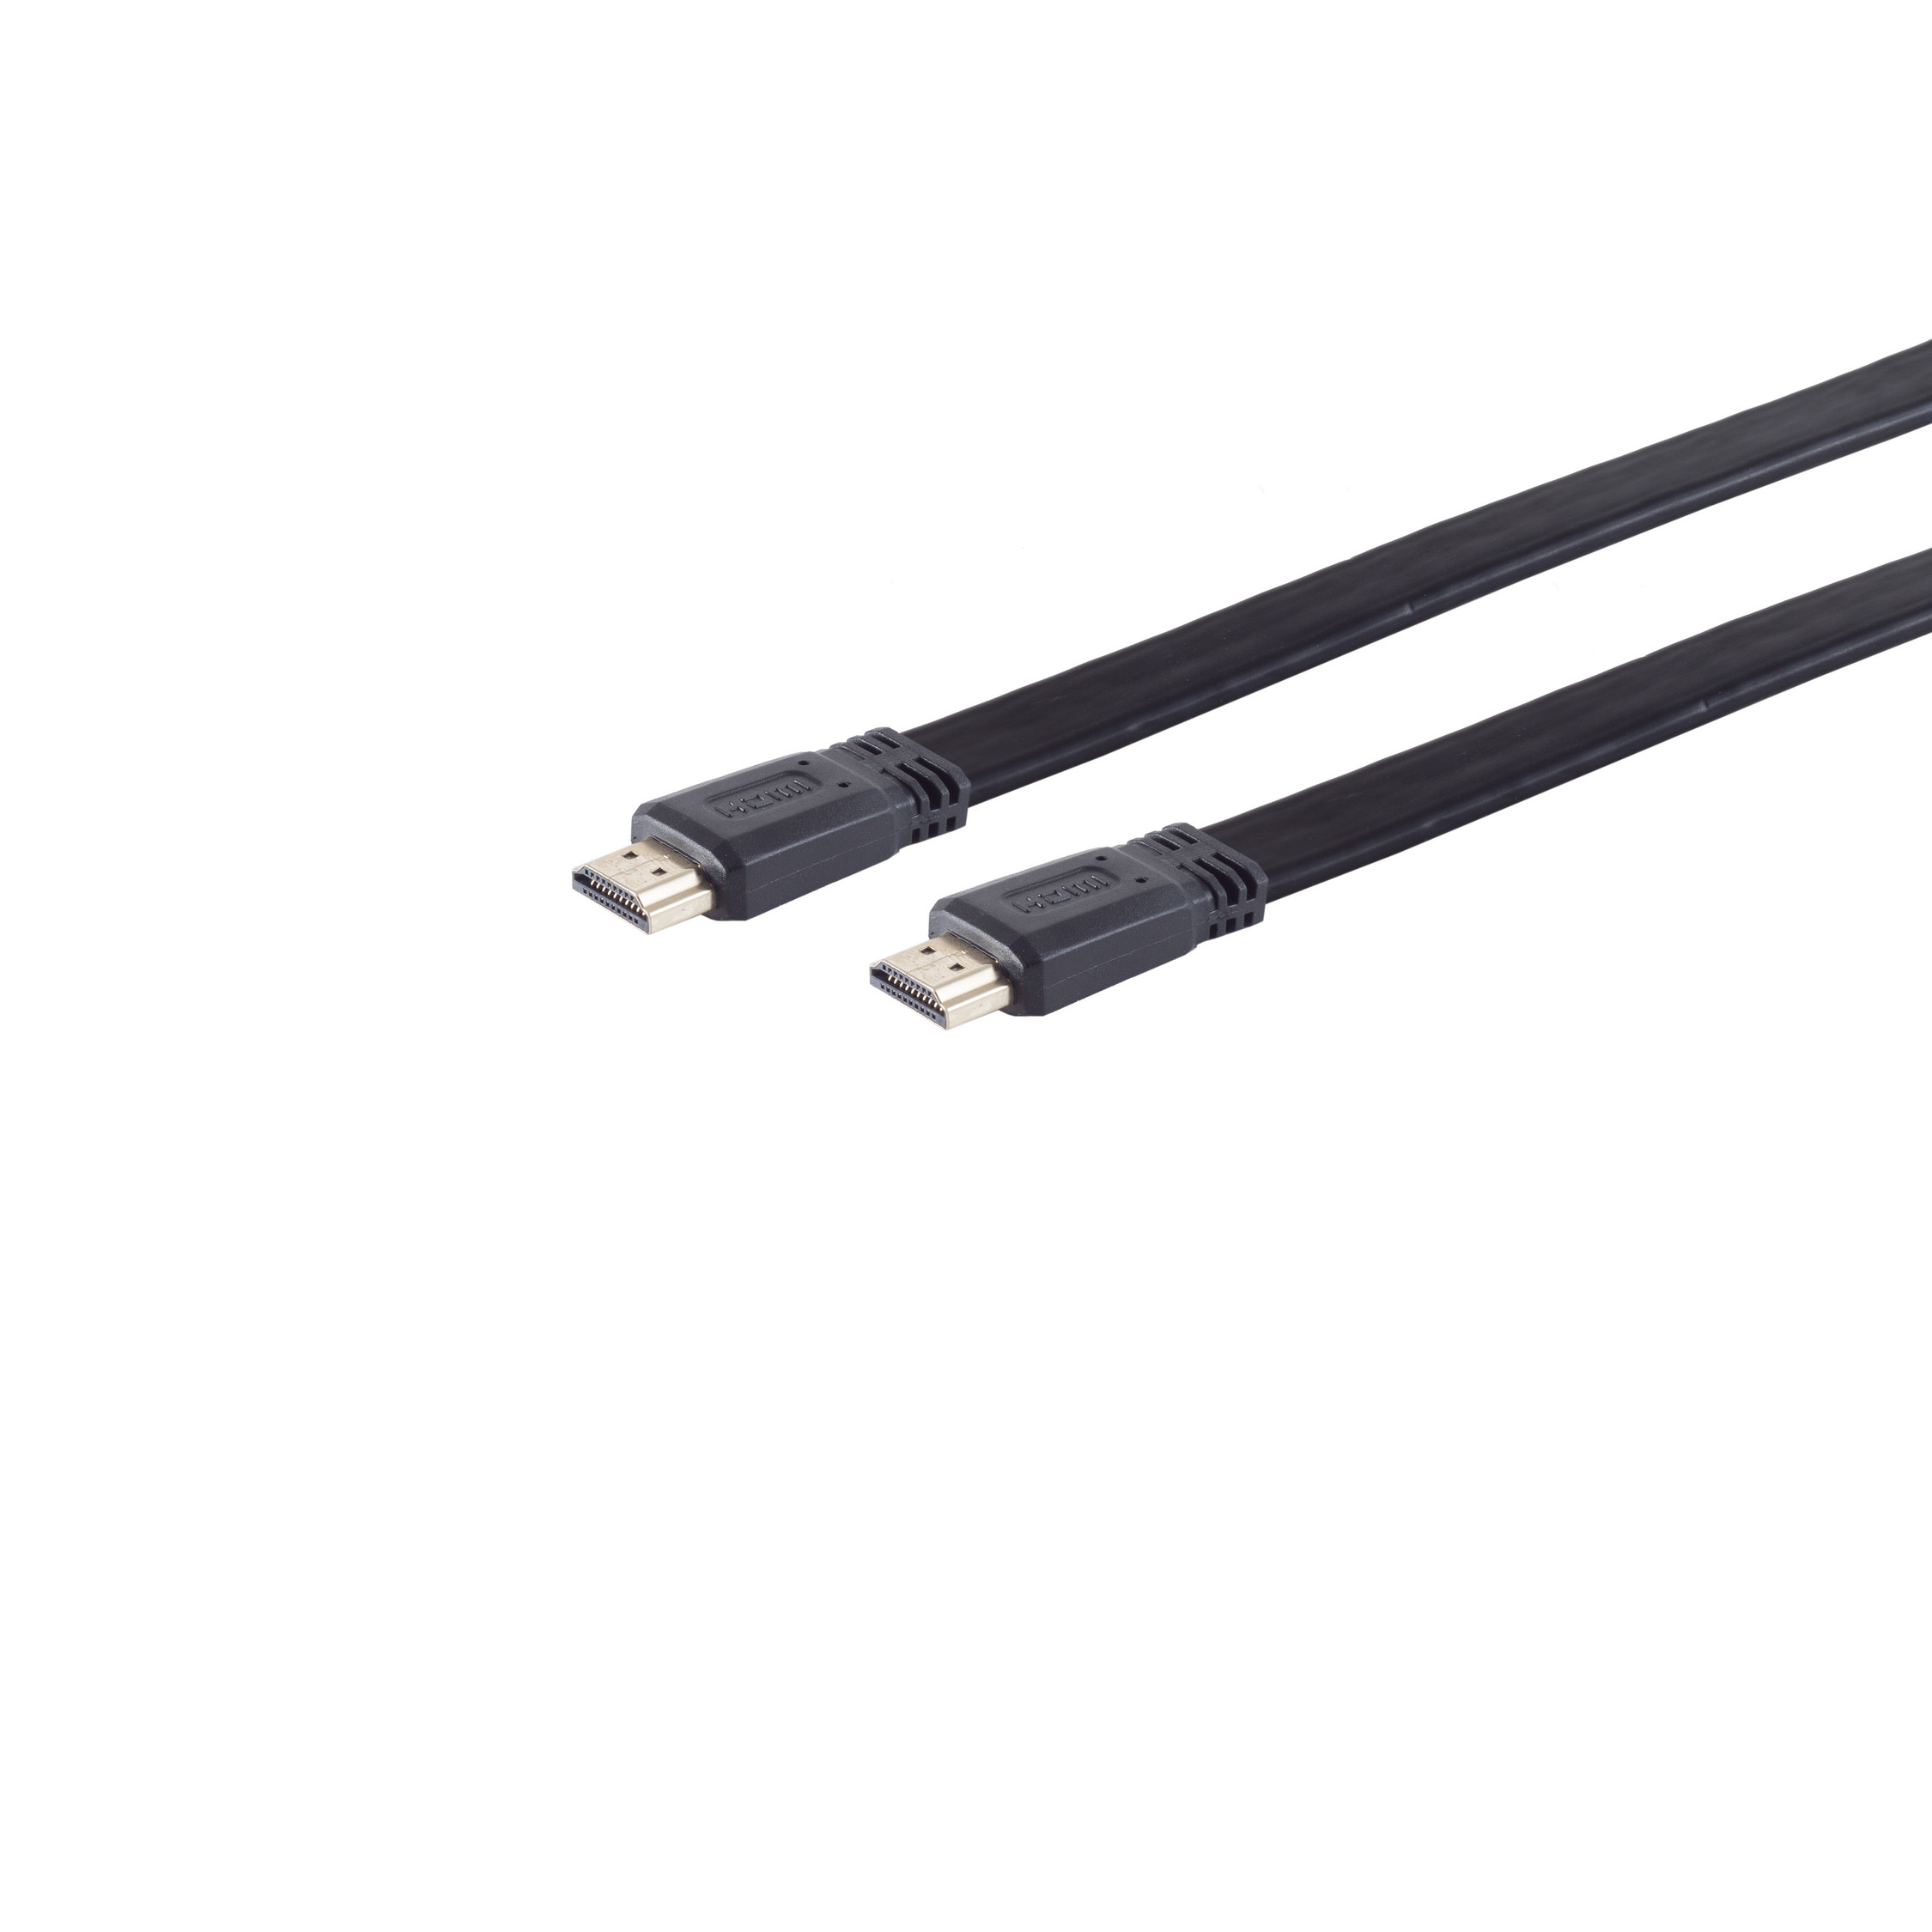 S/CONN MAXIMUM CONNECTIVITY A-St. 5m HEAC HDMI A-St verg. HDMI FLACH / HDMI Kabel